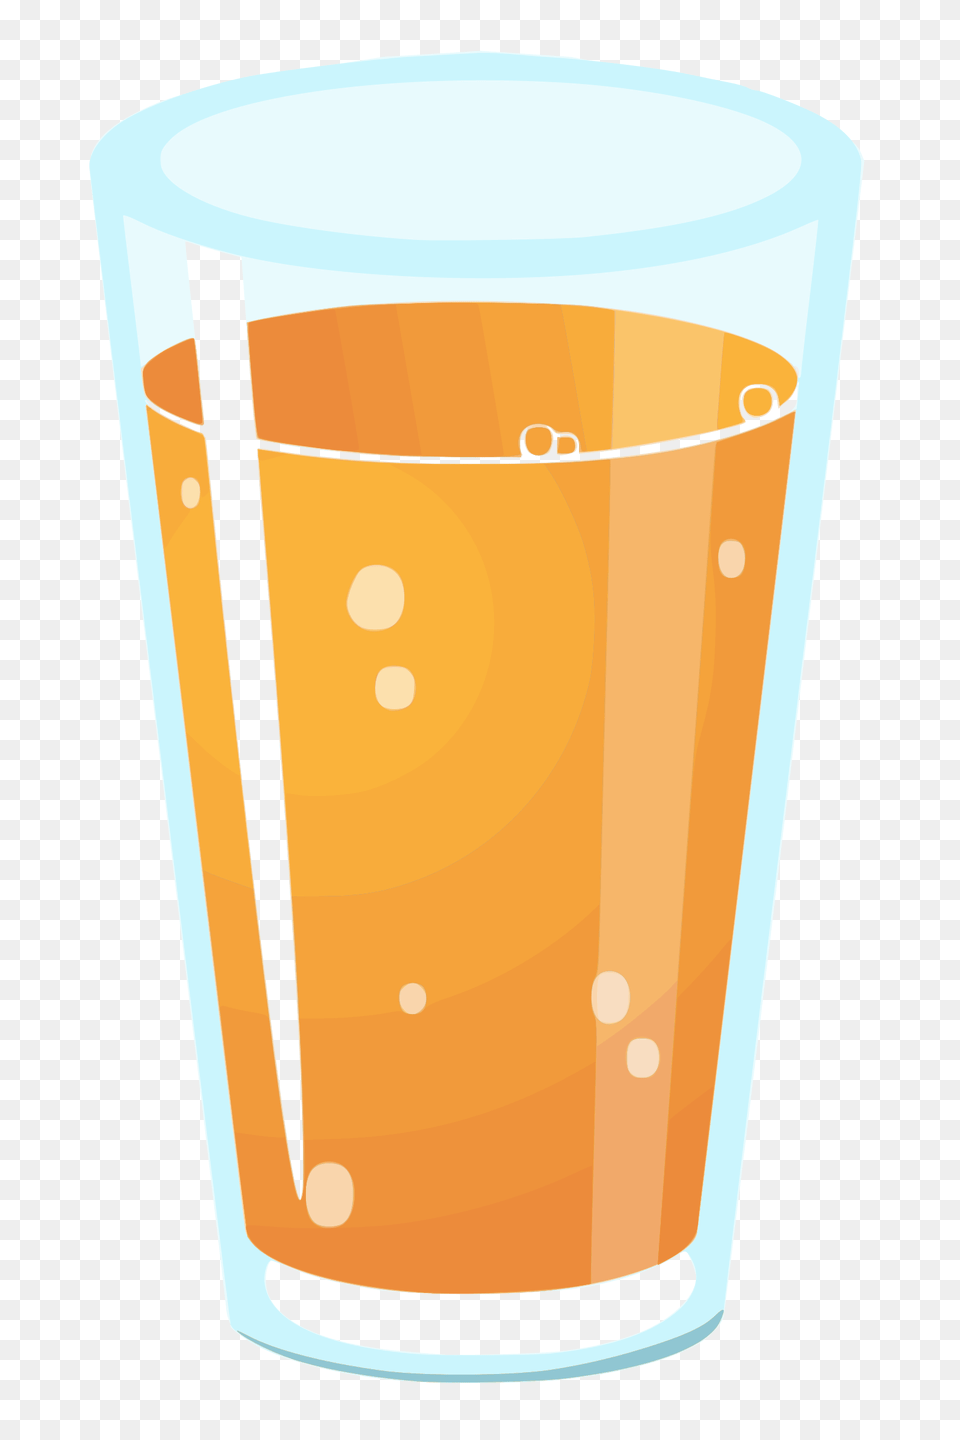 Old Fashioned Glassorange Juicecup Clipart Royalty Clip Art Glass Of Orange Juice, Alcohol, Beer, Beverage, Beer Glass Free Transparent Png